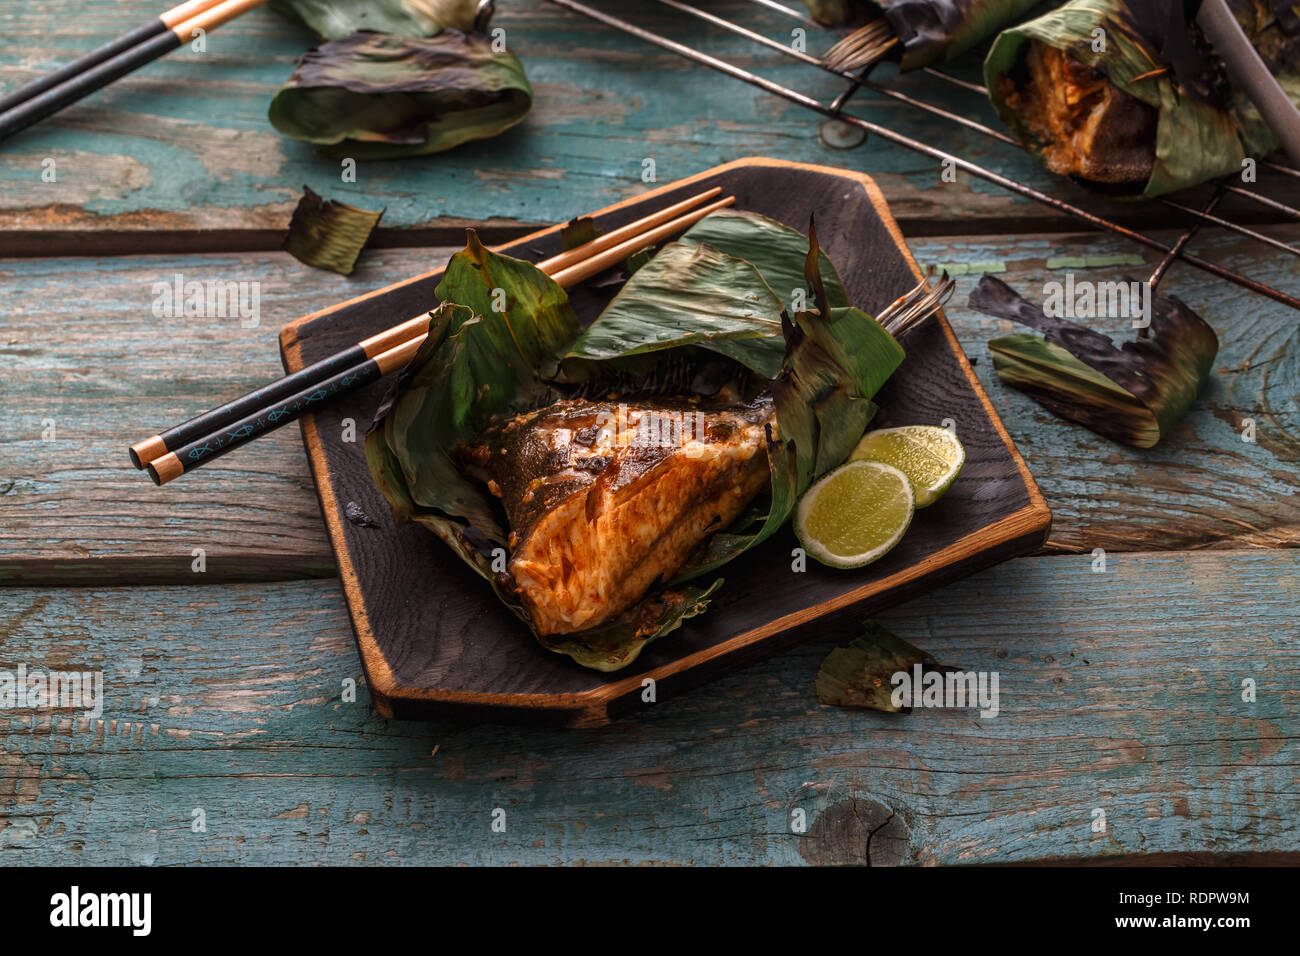 Le Sambal stingray dans une feuille sur une planche en bois, une cuisine malaisienne, copy space Banque D'Images